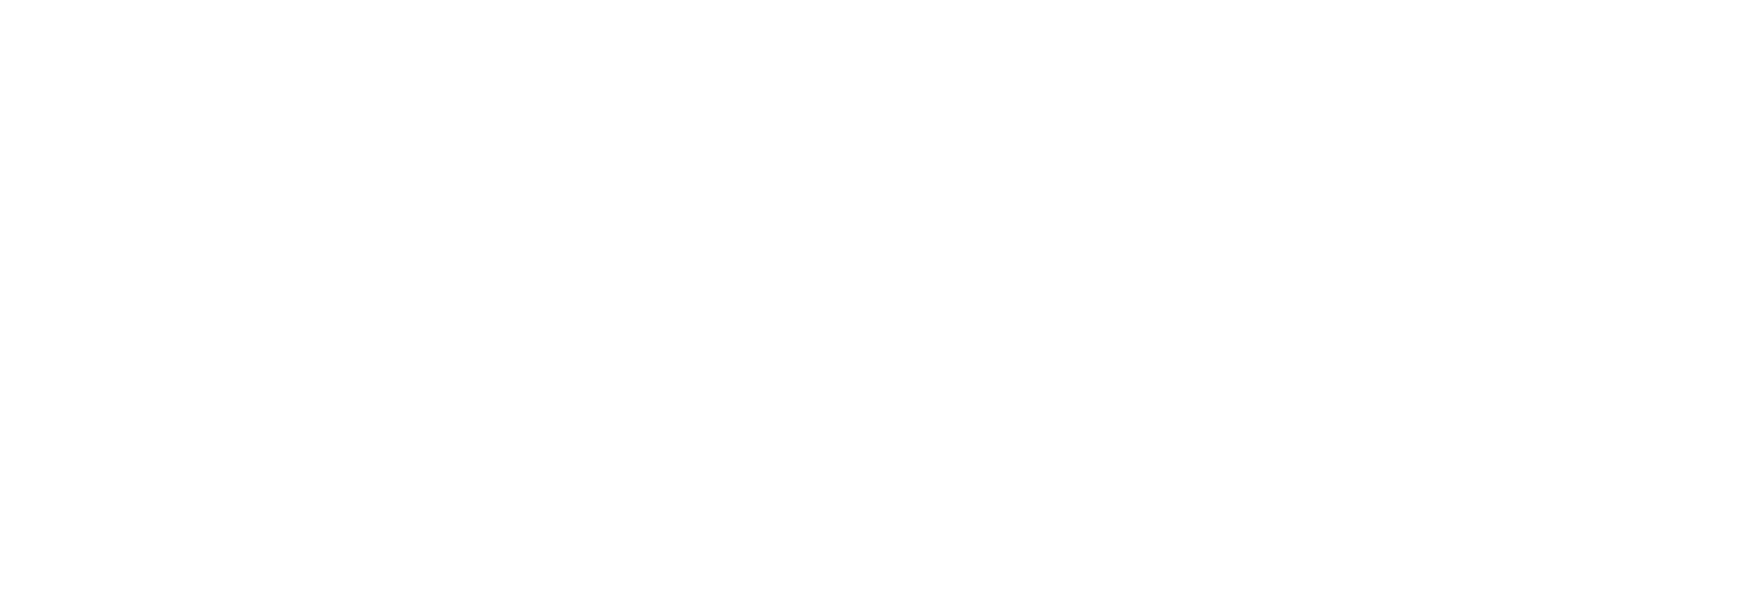 dime community bancshares logo